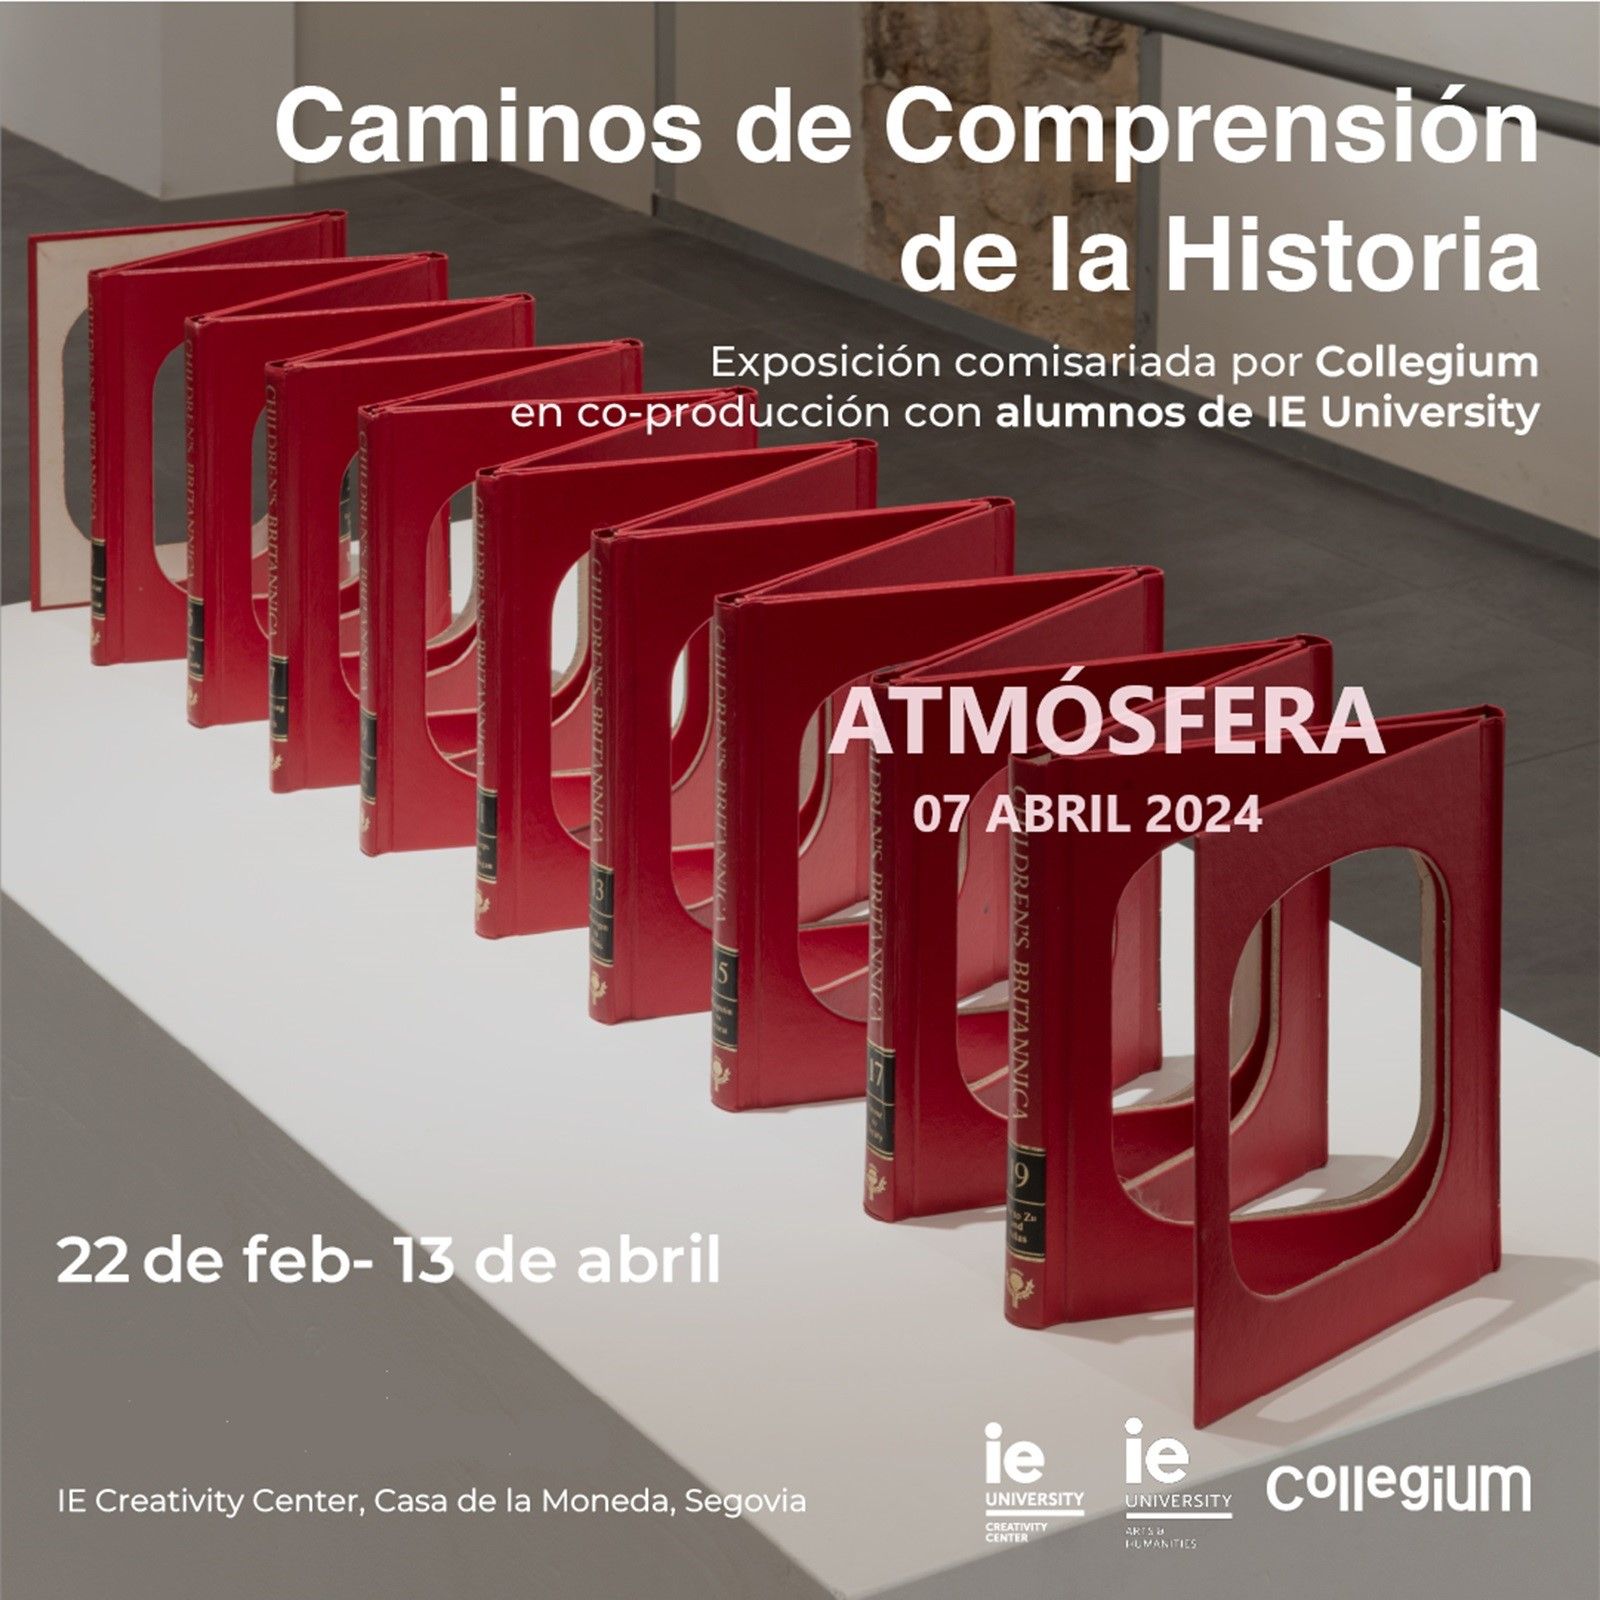 Atmósfera - Exposición ”Caminos de comprensión de la Historia” - 07/04/24